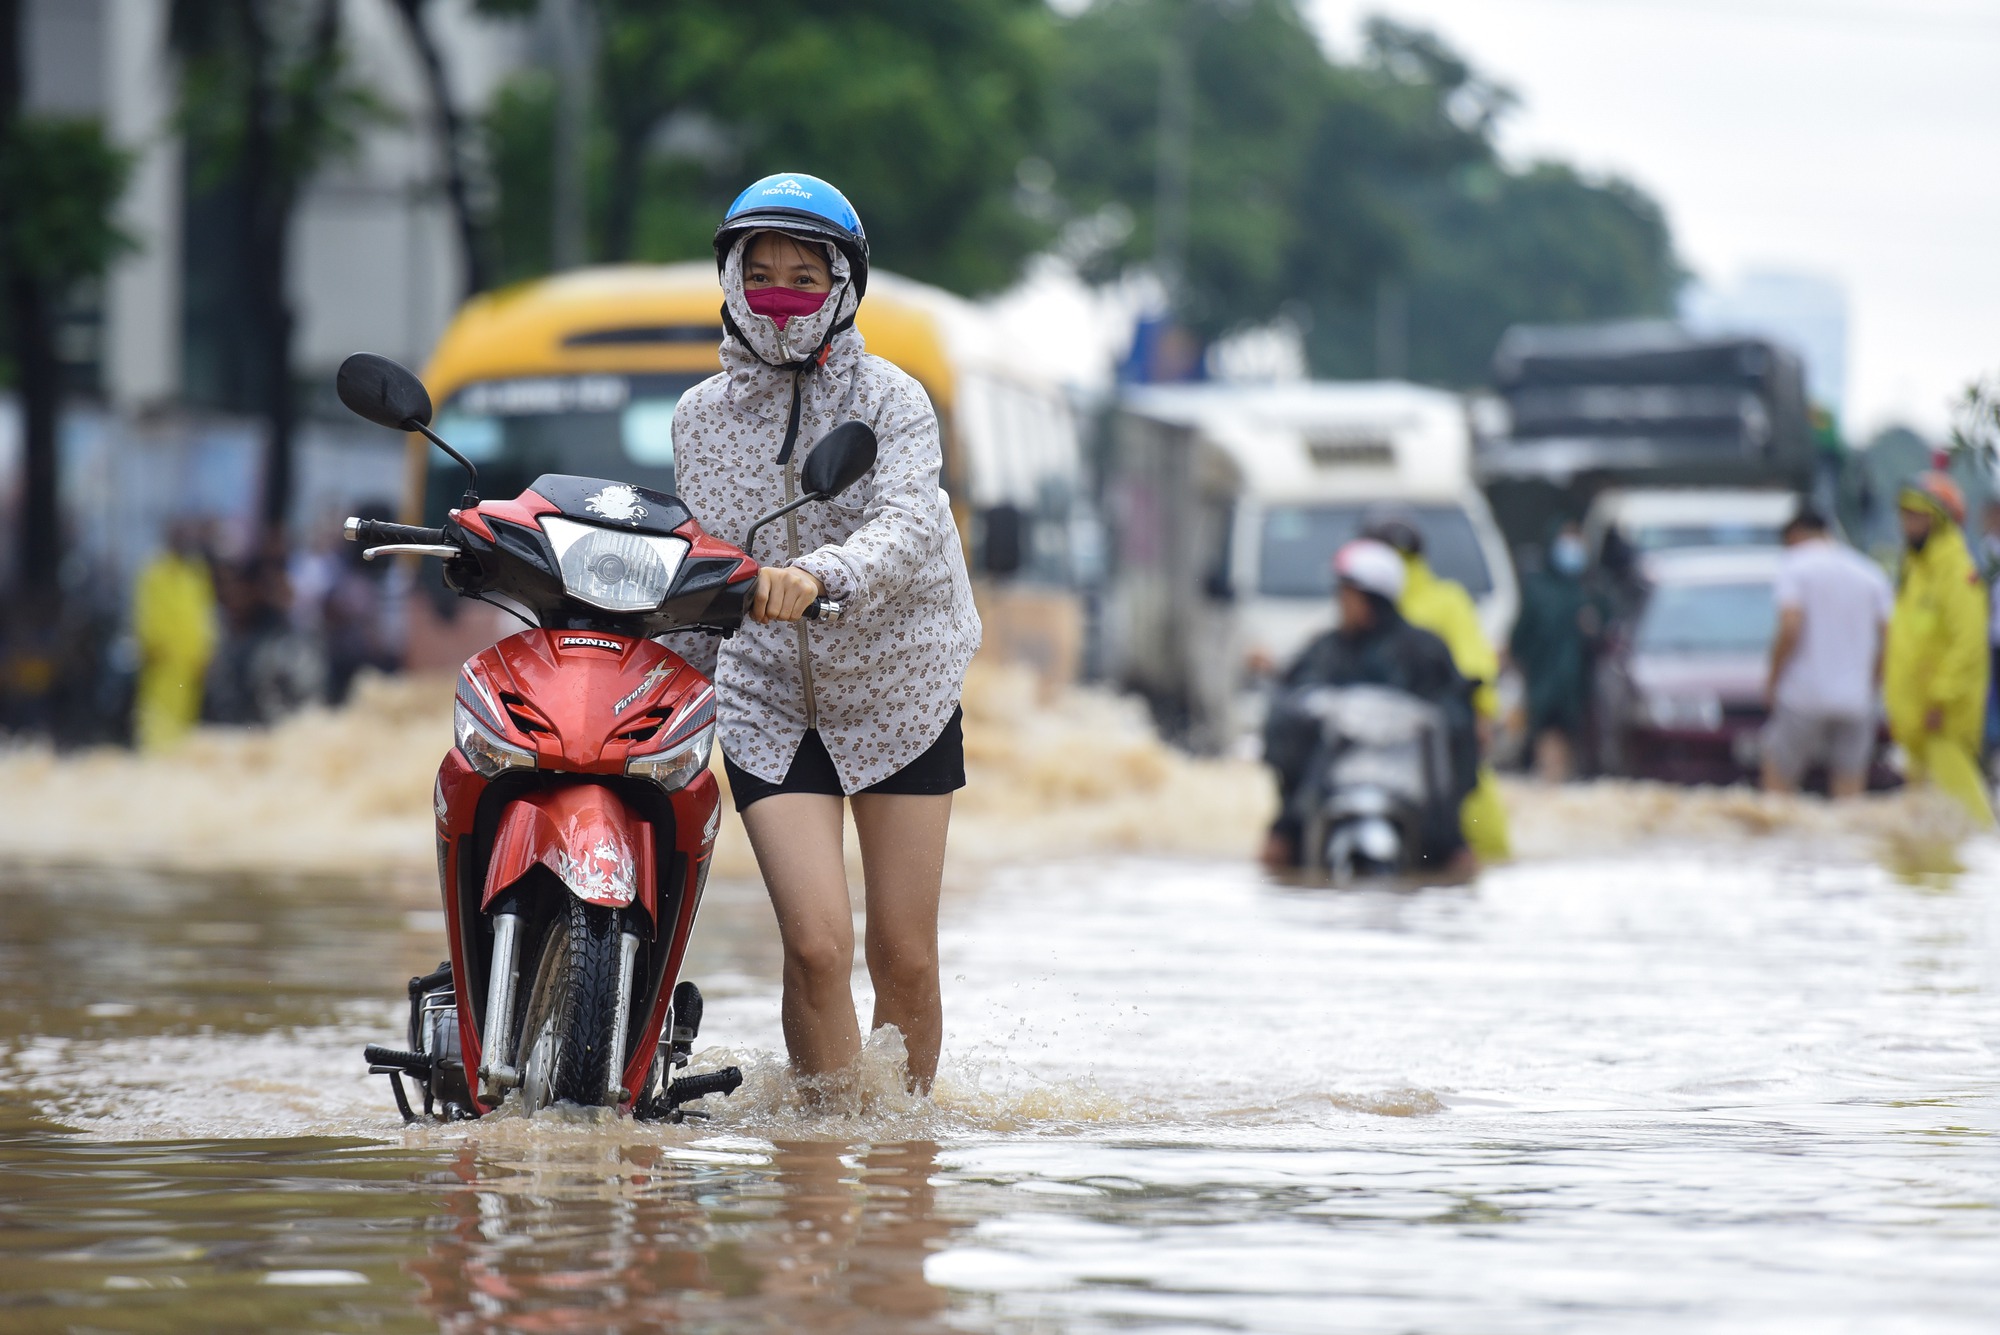 Đường gom đại lộ Thăng Long chìm trong biển nước sau trận mưa lớn - Ảnh 12.